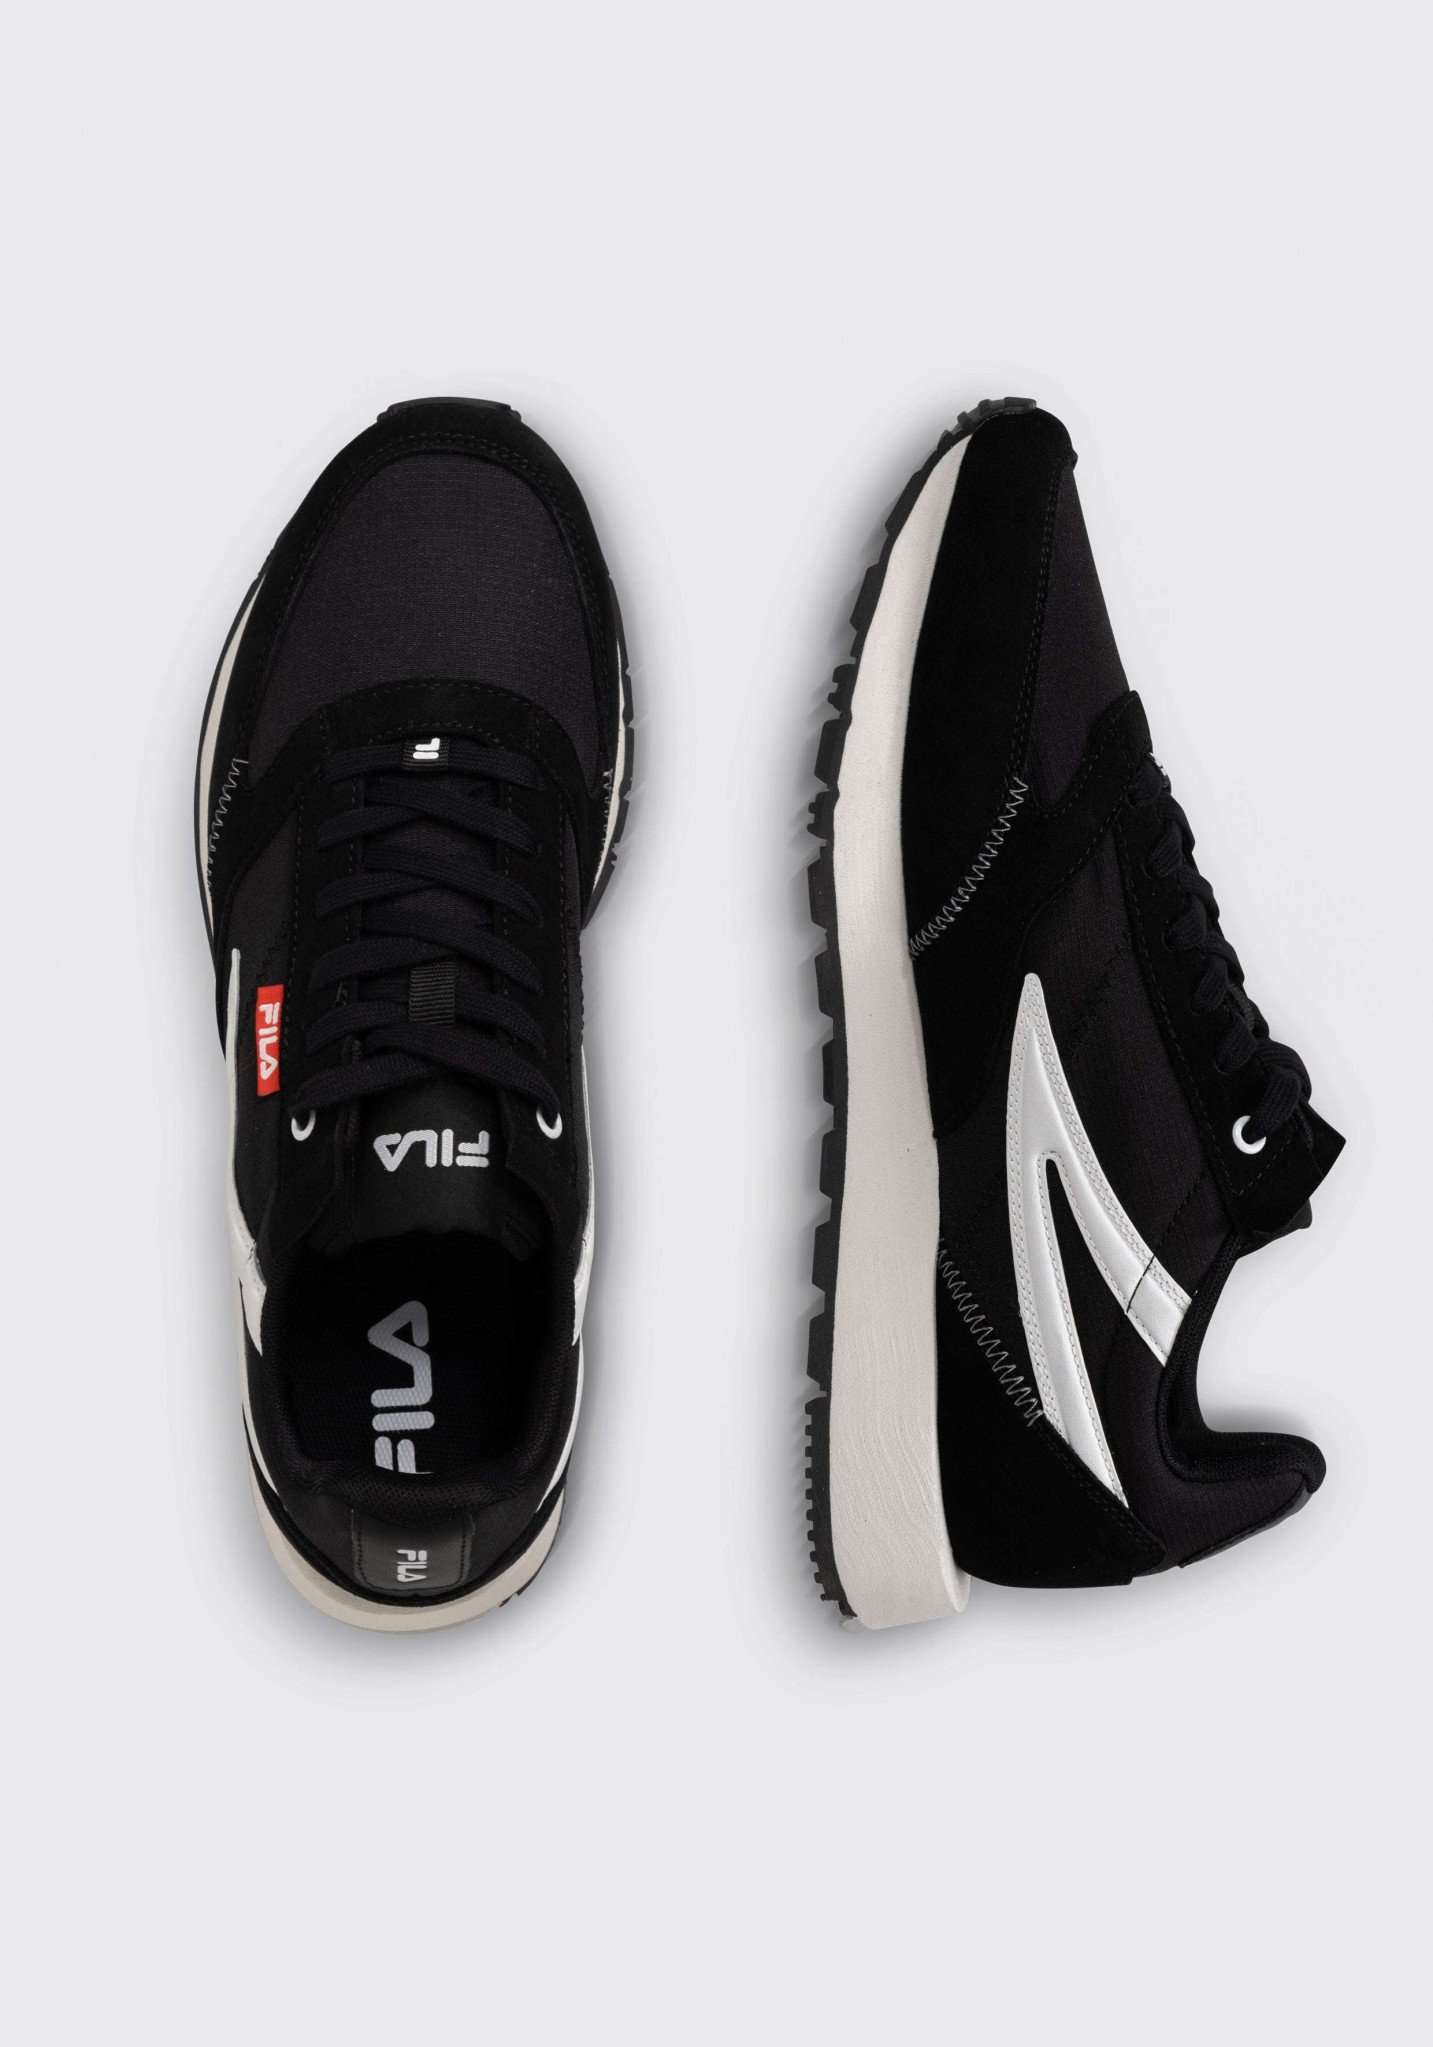 Run Formation in Black Sneakers Fila   